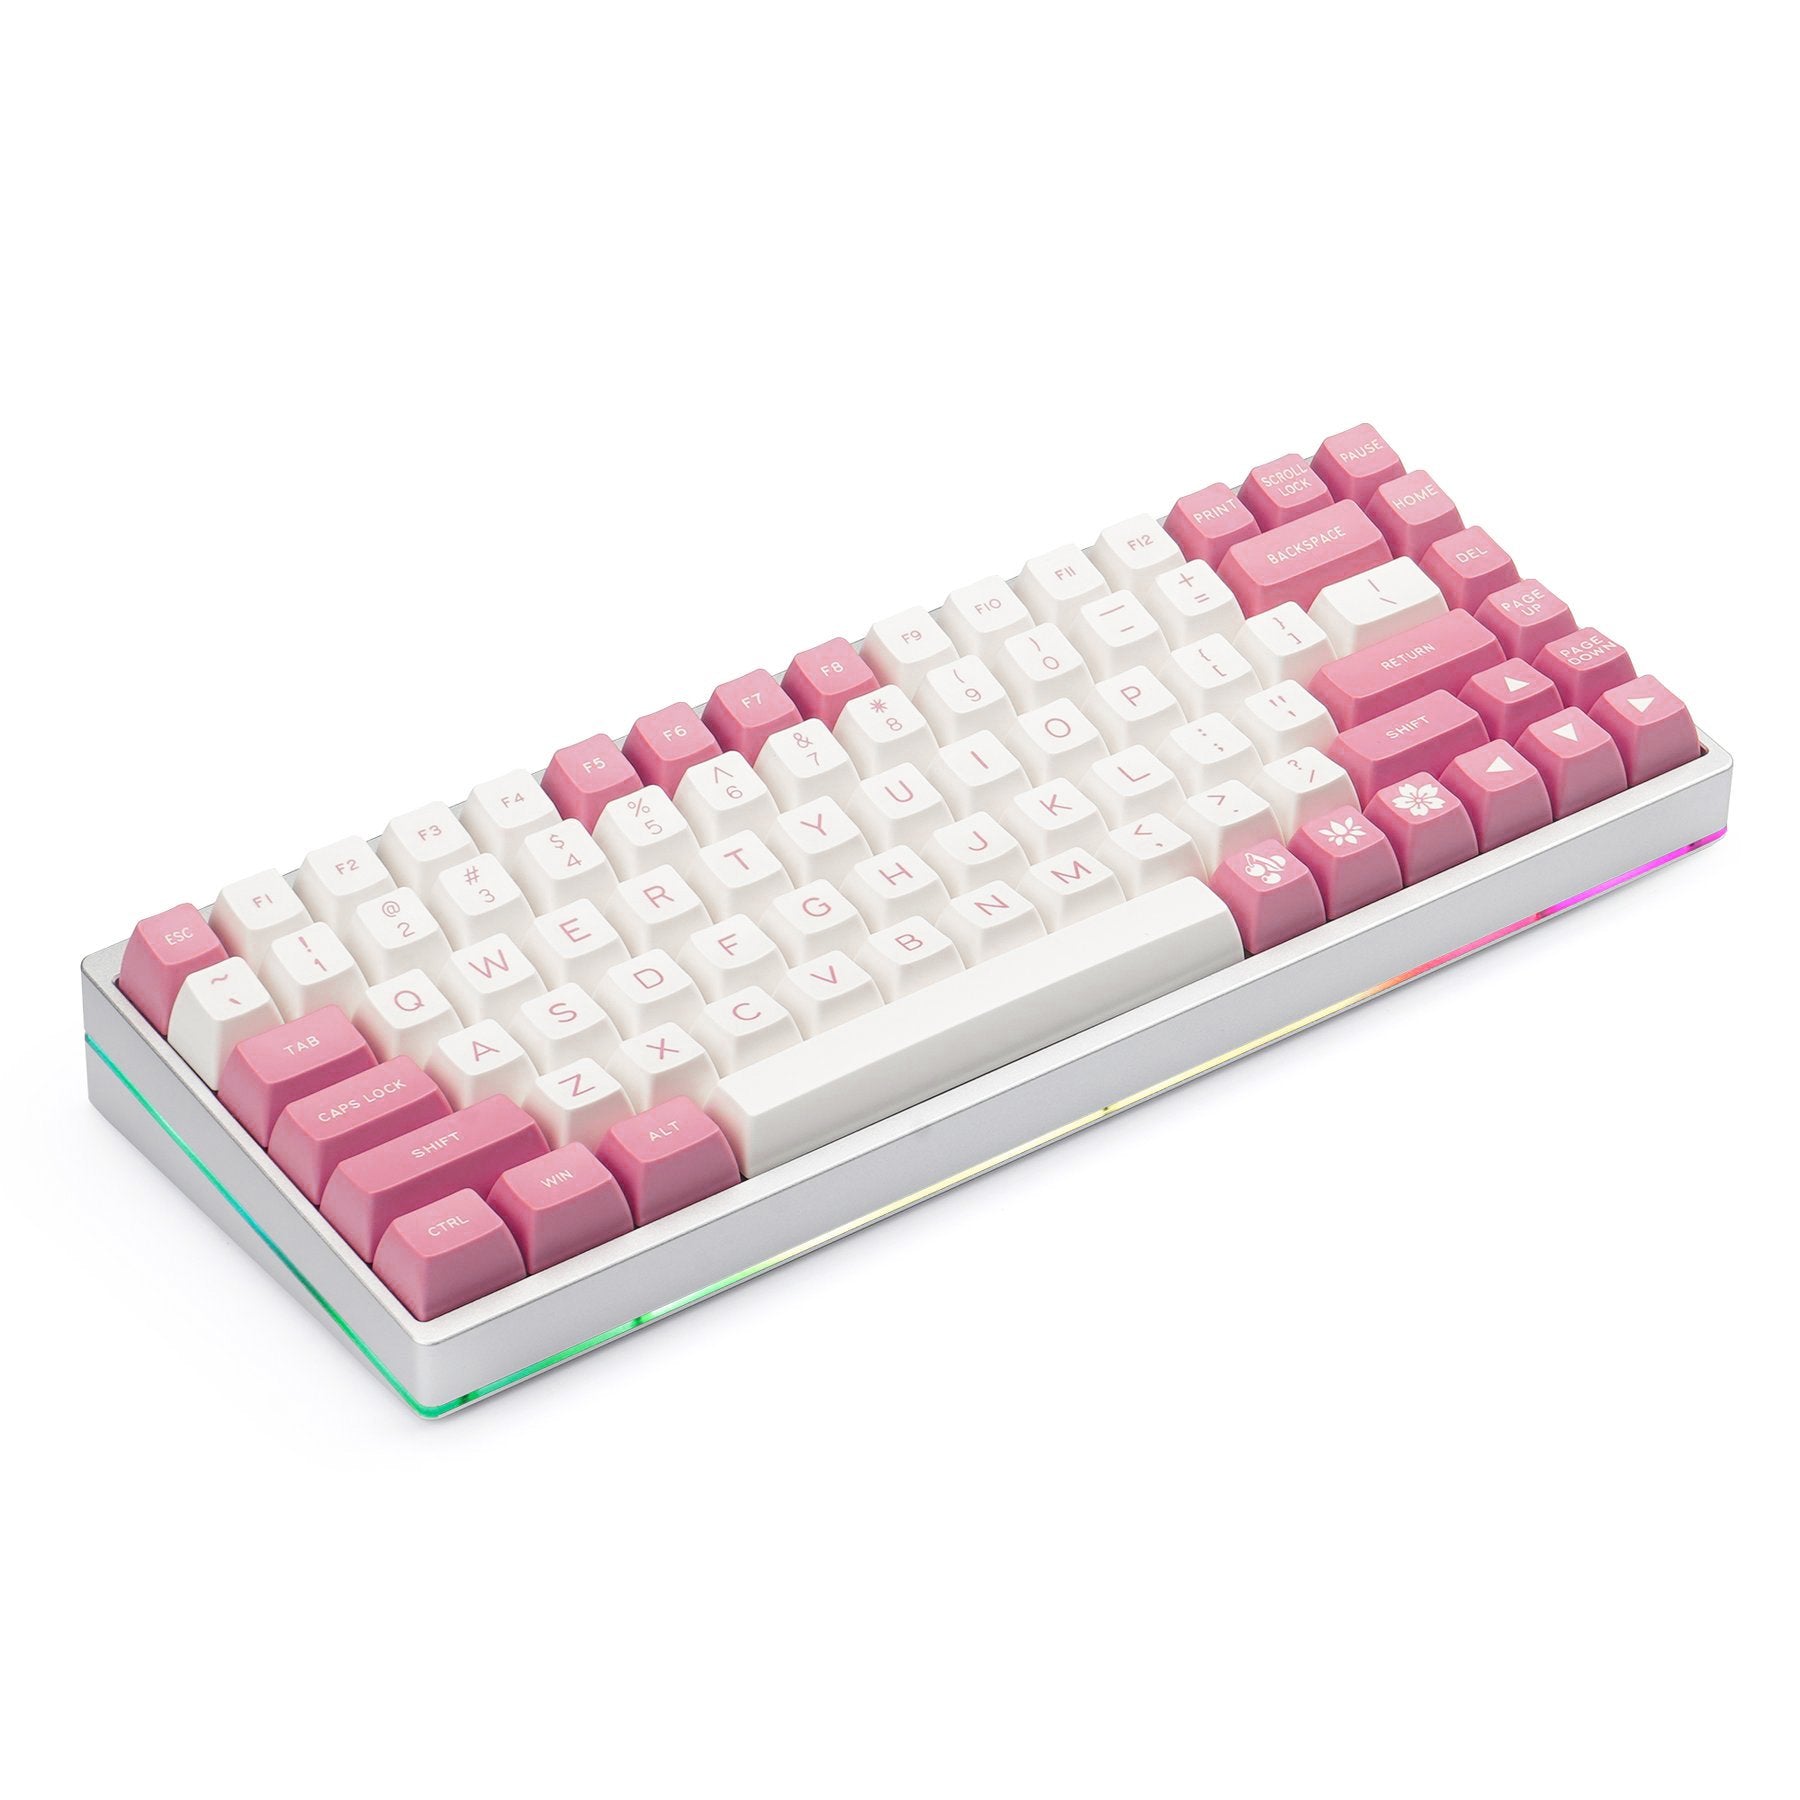 MAXKEY Pink White SA Profile Doubleshot ABS Keycaps Set